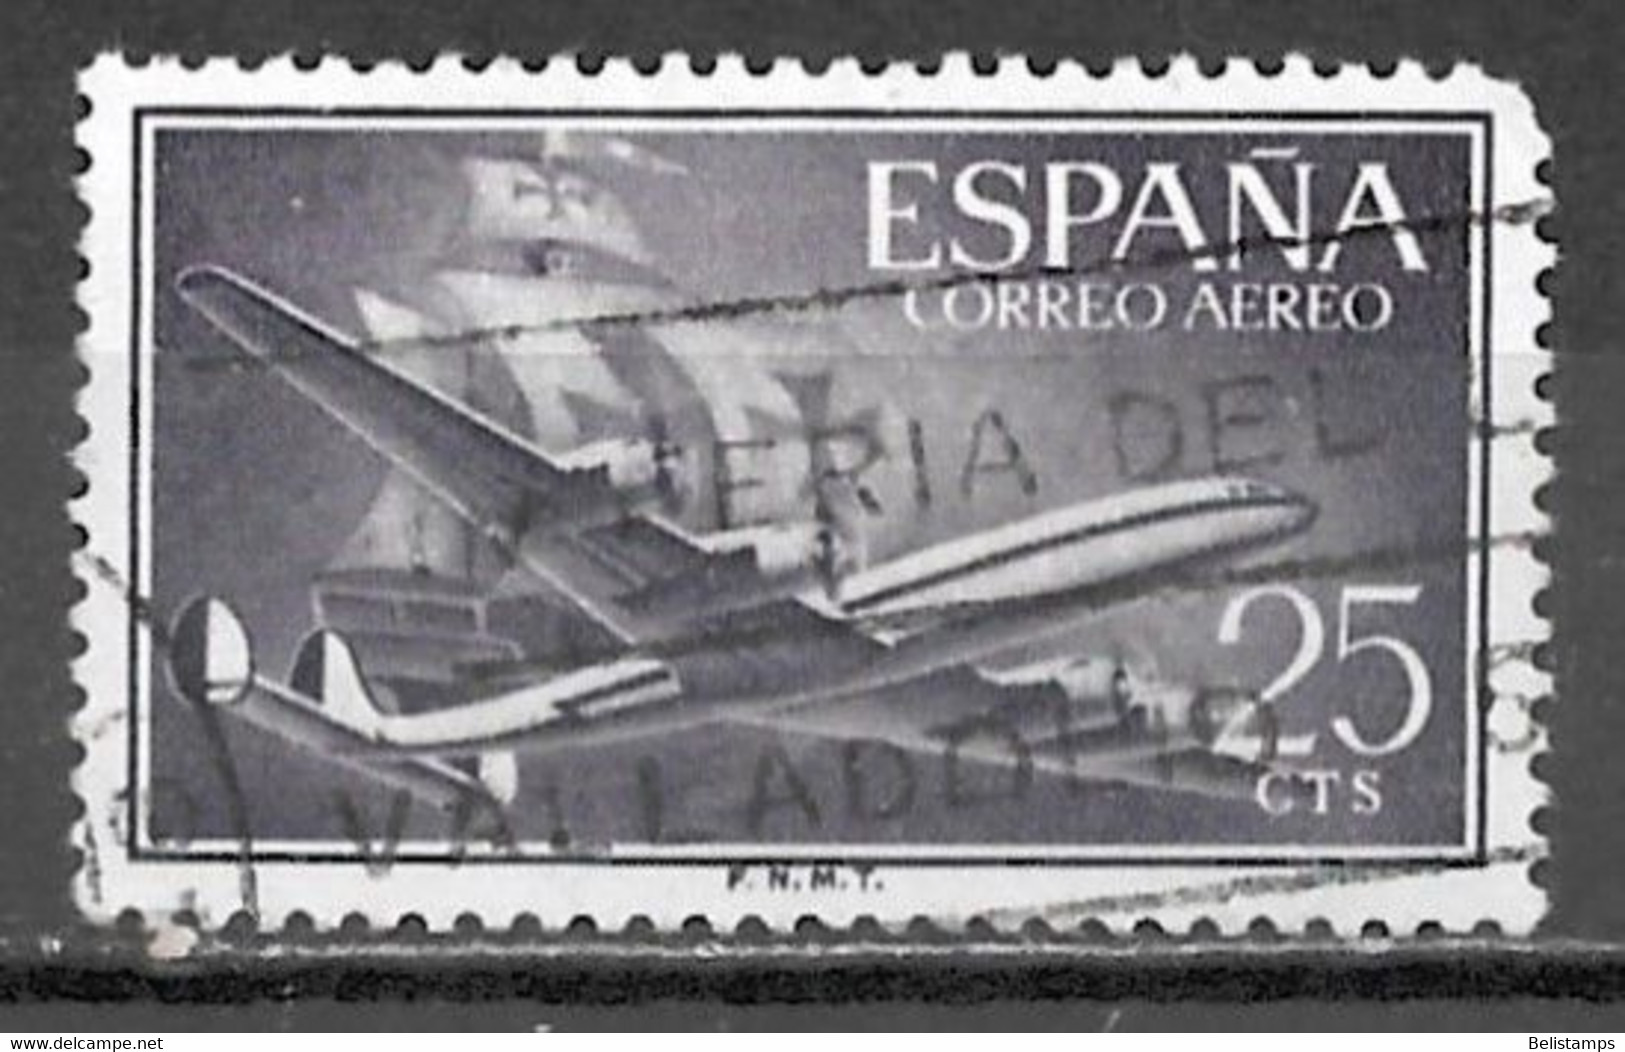 Spain 1955. Scott #C148 (U) Plane And Caravel - Usados